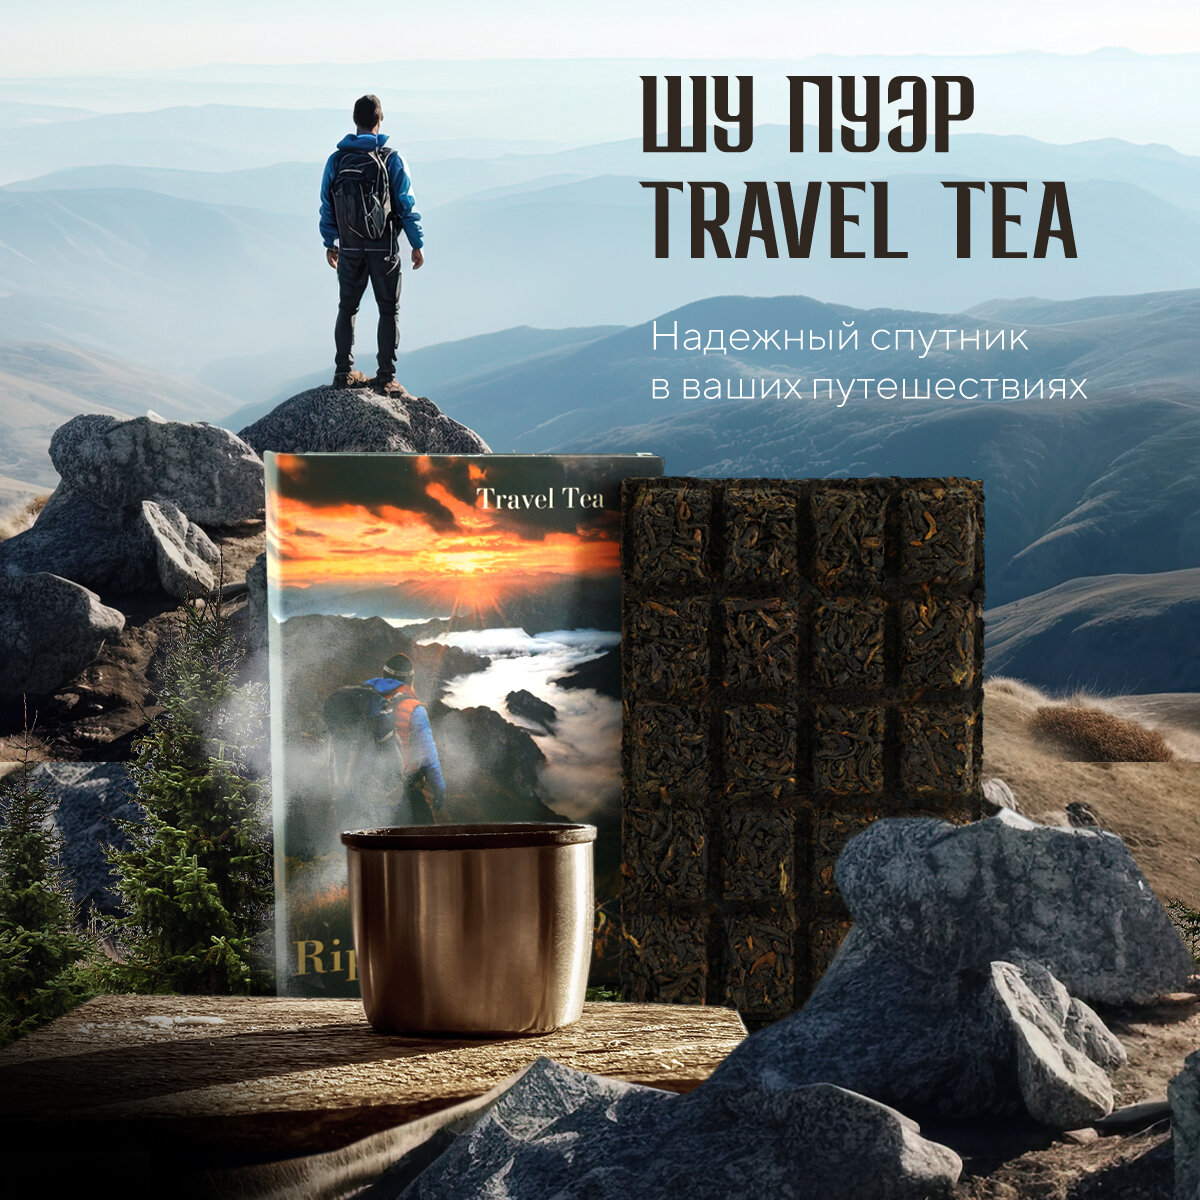 Шу пуэр Travel tea "Ripe puerh tea", 70 г